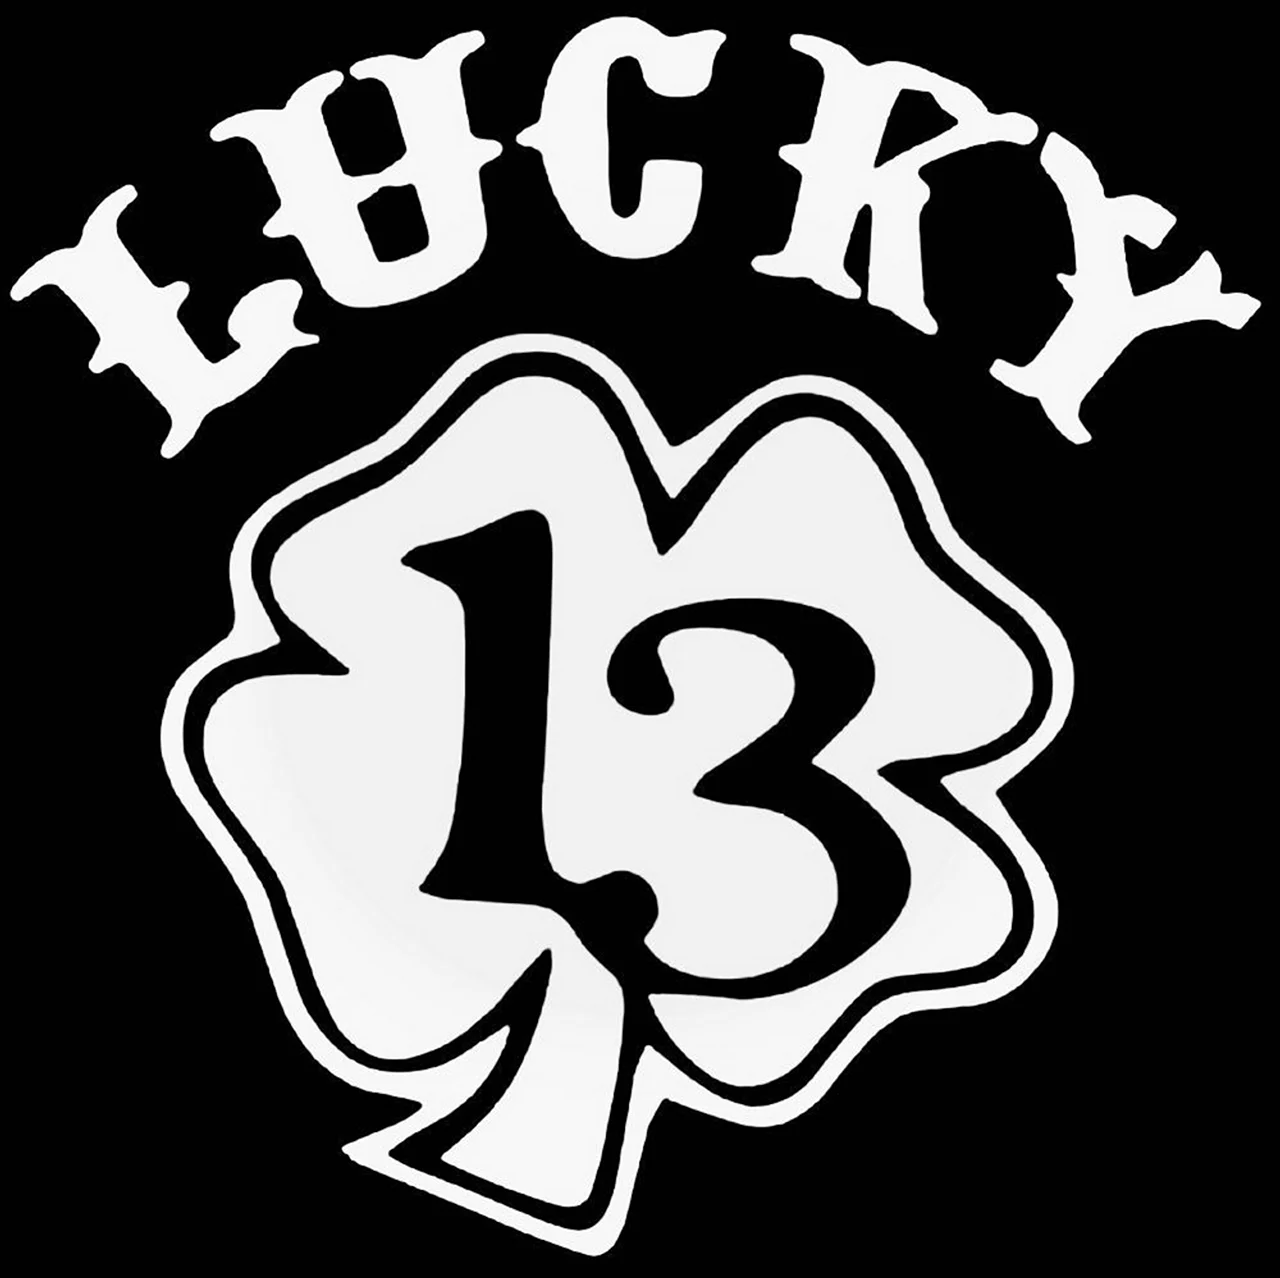 Наклейка Lucky 13. Картинка